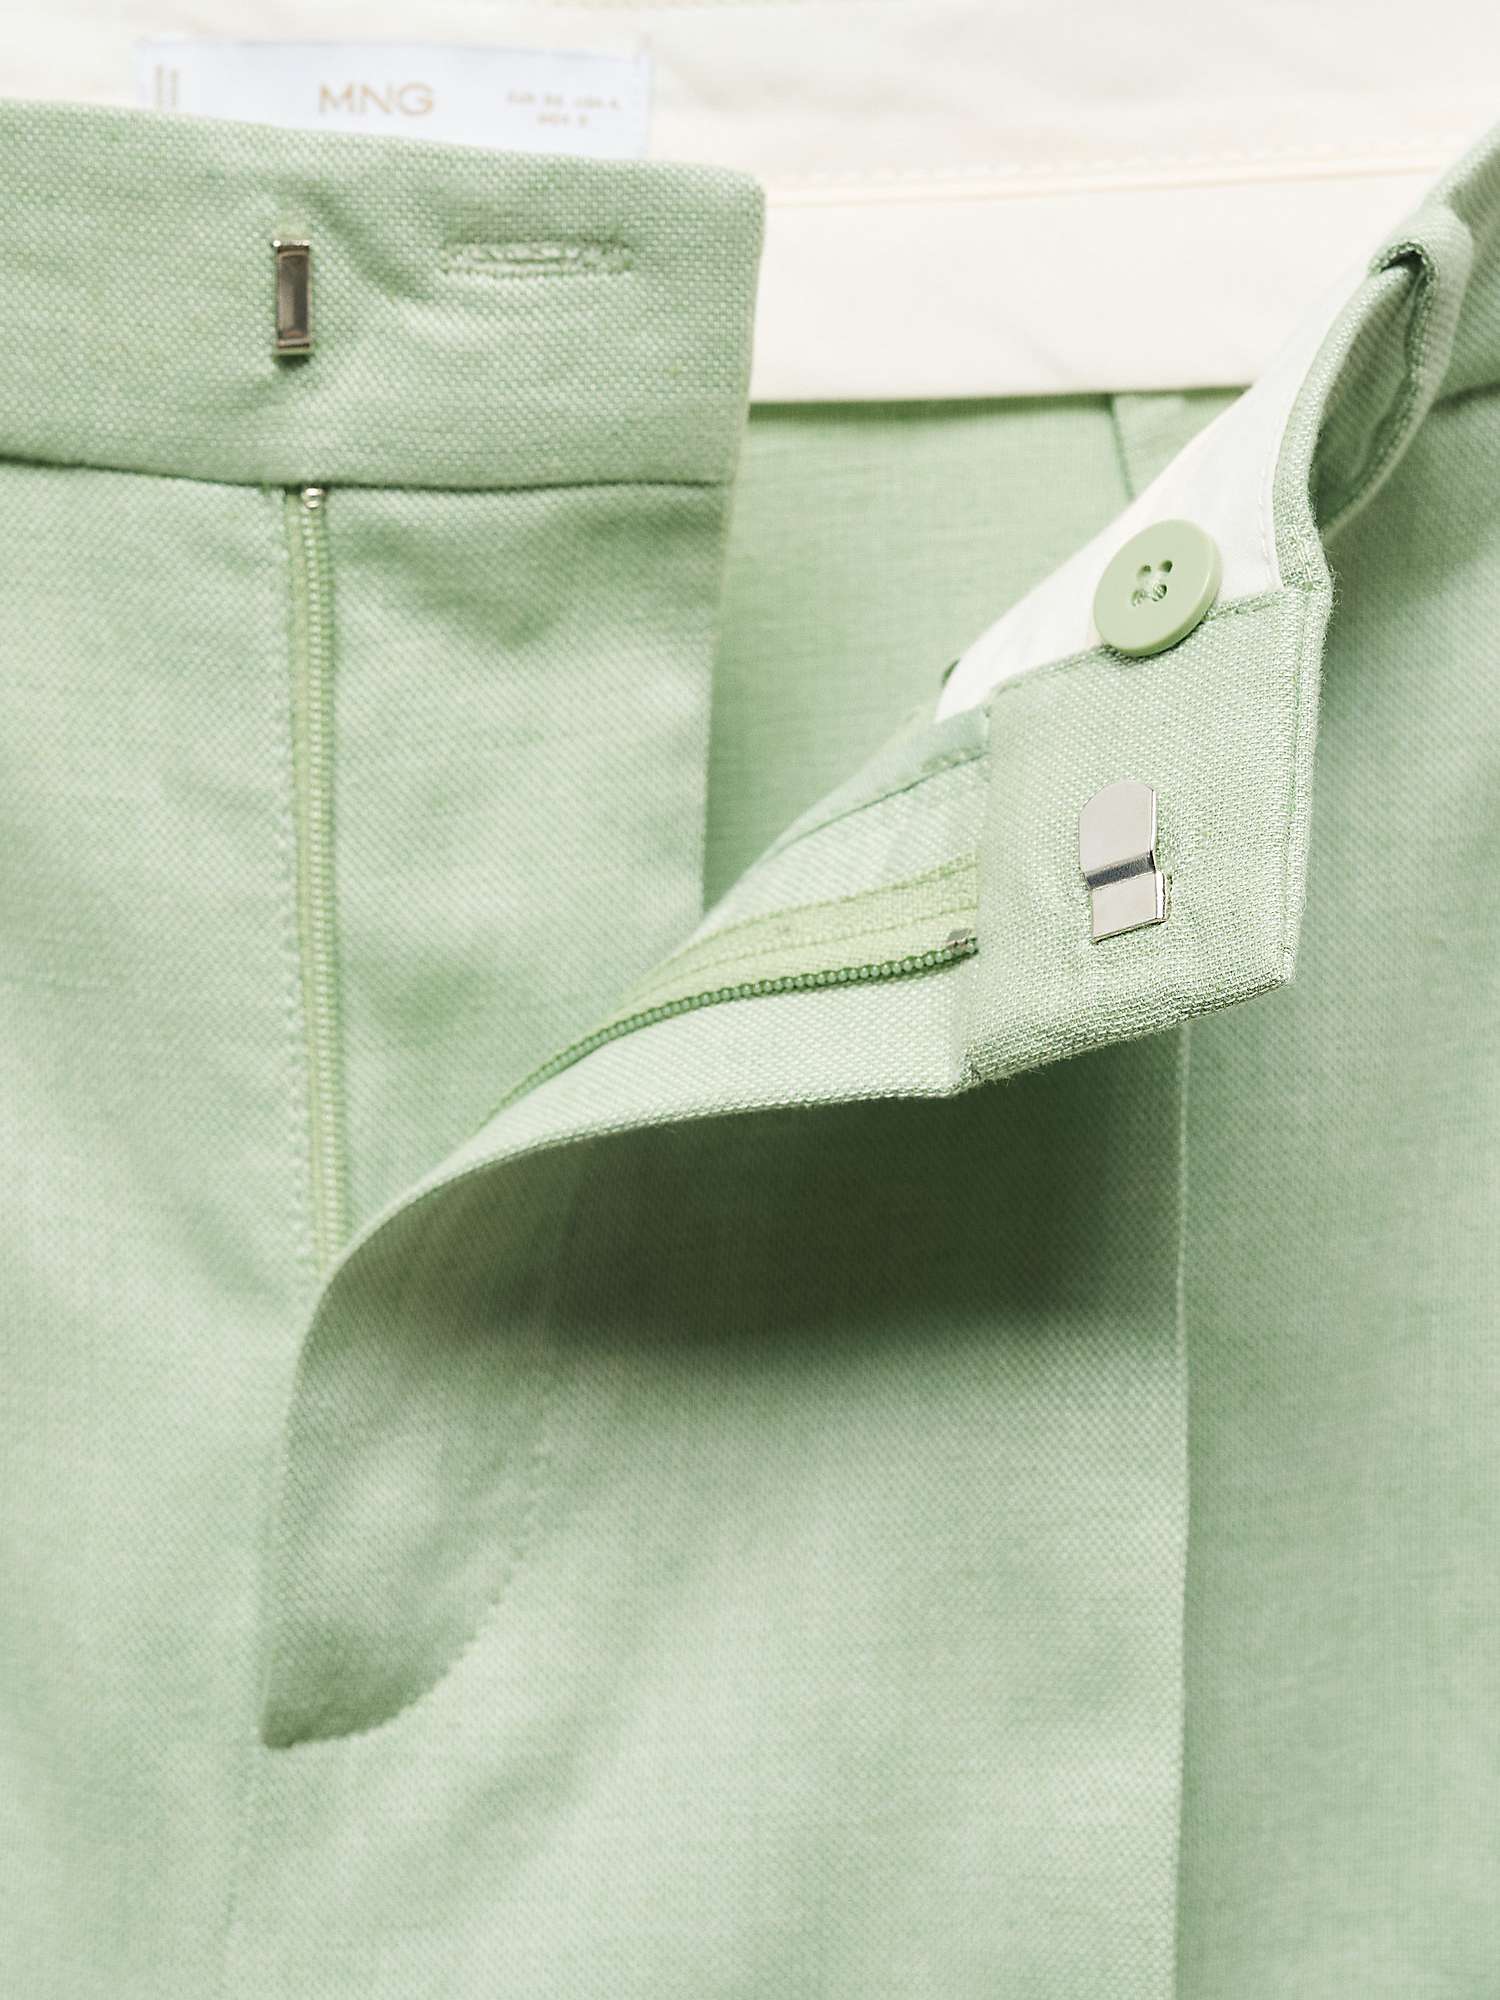 Buy Mango Sevilla Linen Blend Wide Leg Trousers, Green Online at johnlewis.com